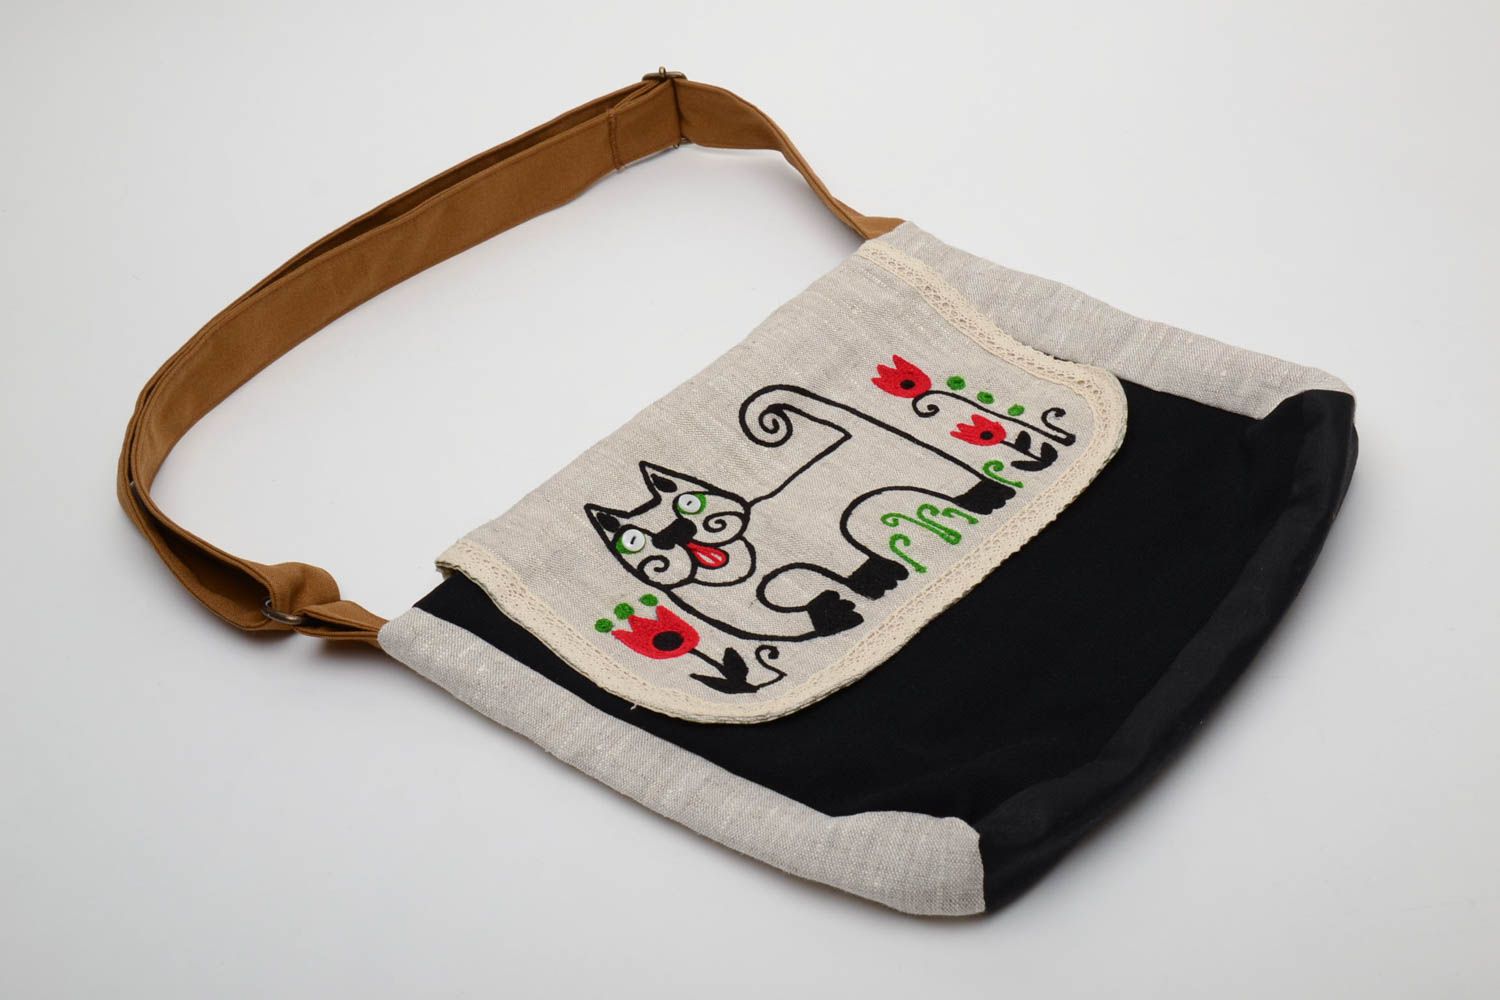 Textil Tasche mit Katzeprint foto 2